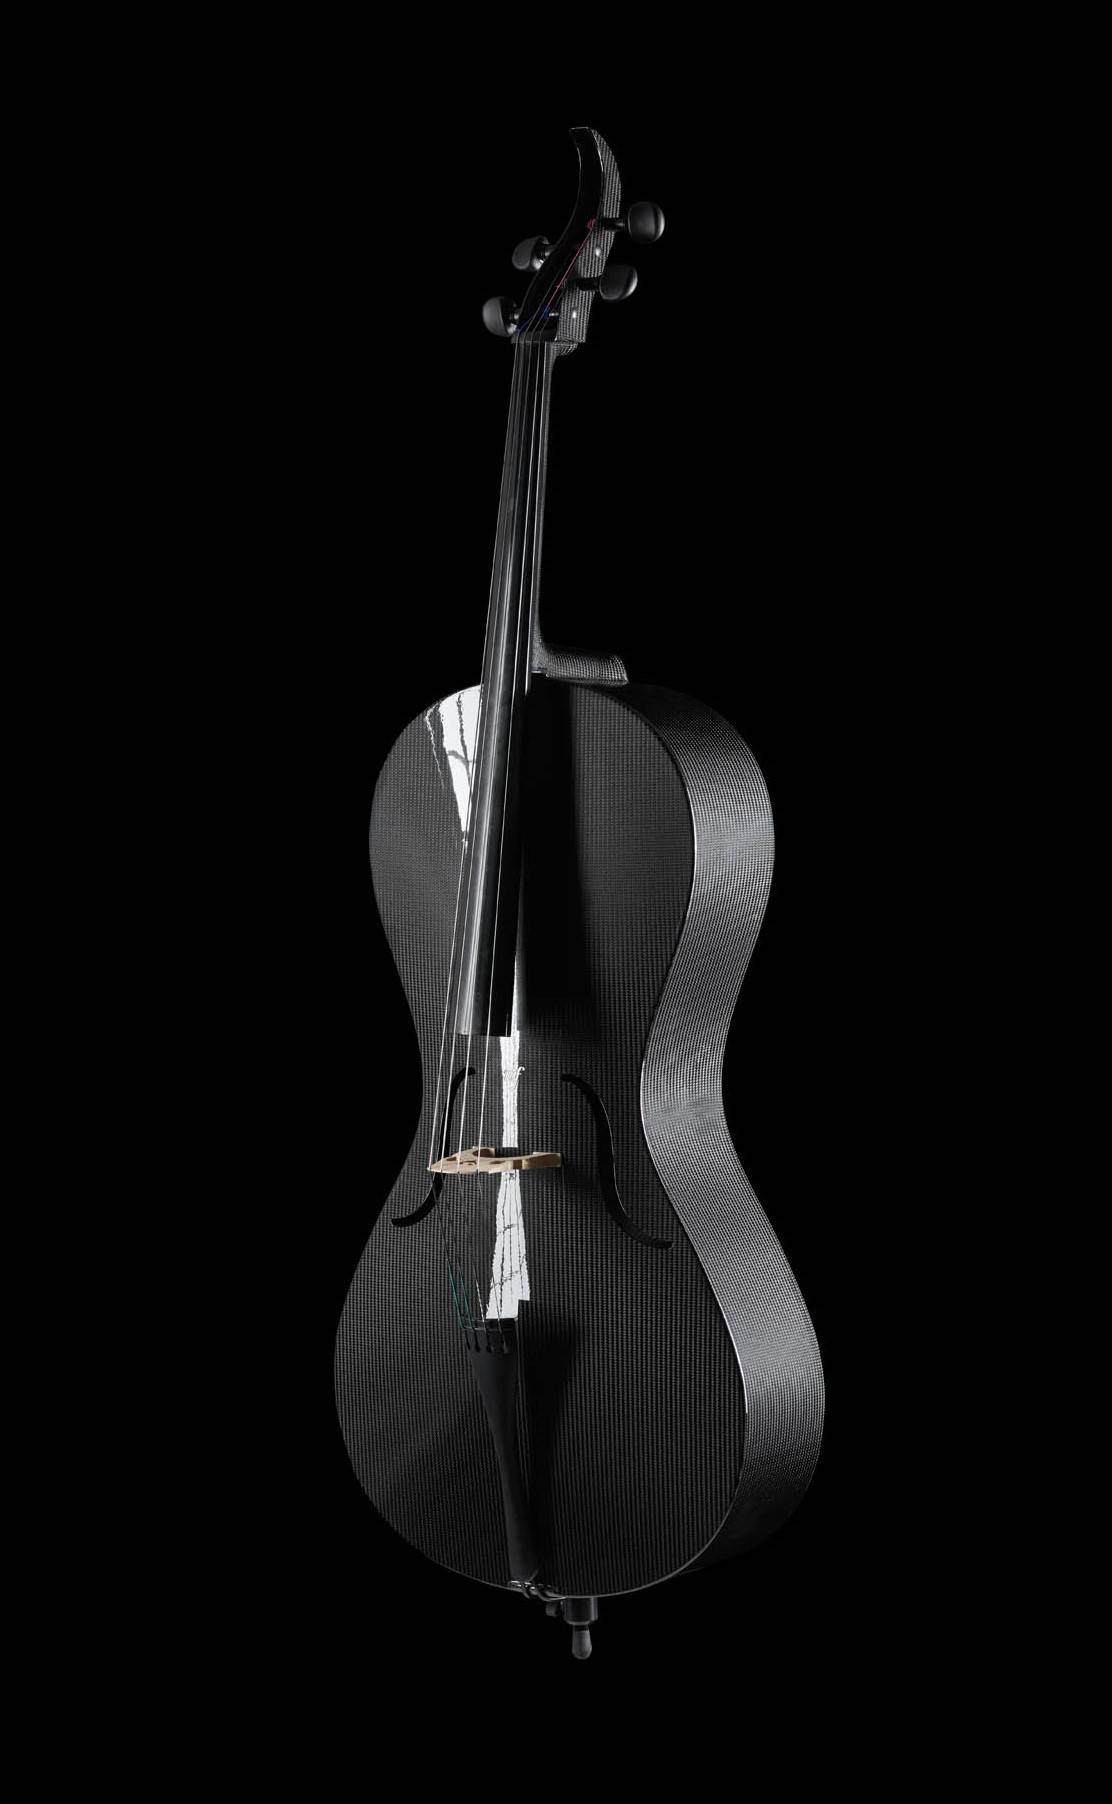 Carbon cello "Design Line" new model 2021